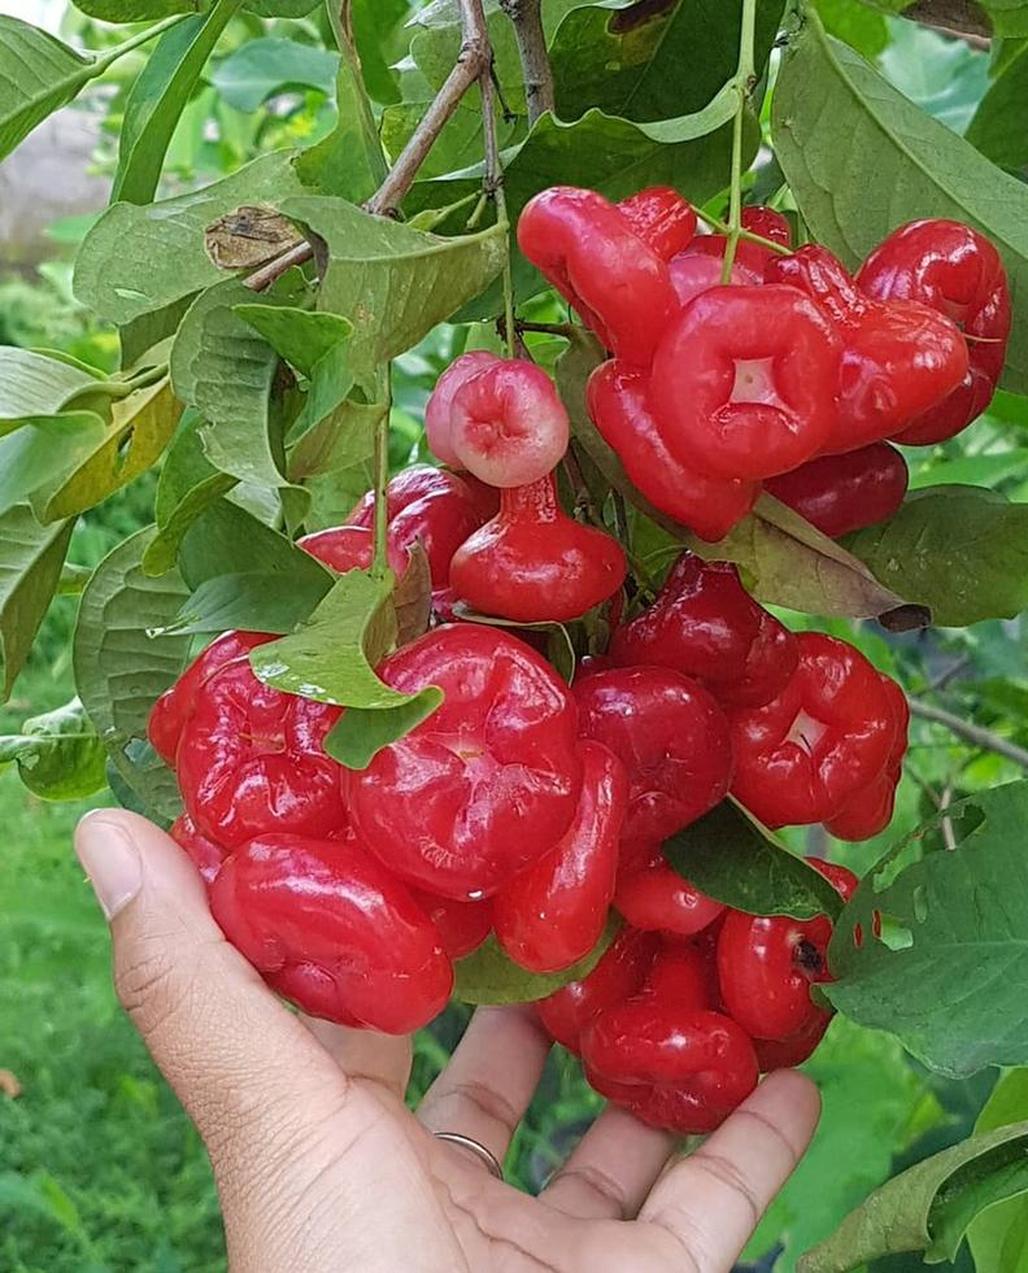 Gambar Produk bibit tanaman Bibit Jambu Air Hasil Cangkok Tanaman Hias Buah Kancing Citra Merah King Rose Dalhari Bolaang Mongondow Utara